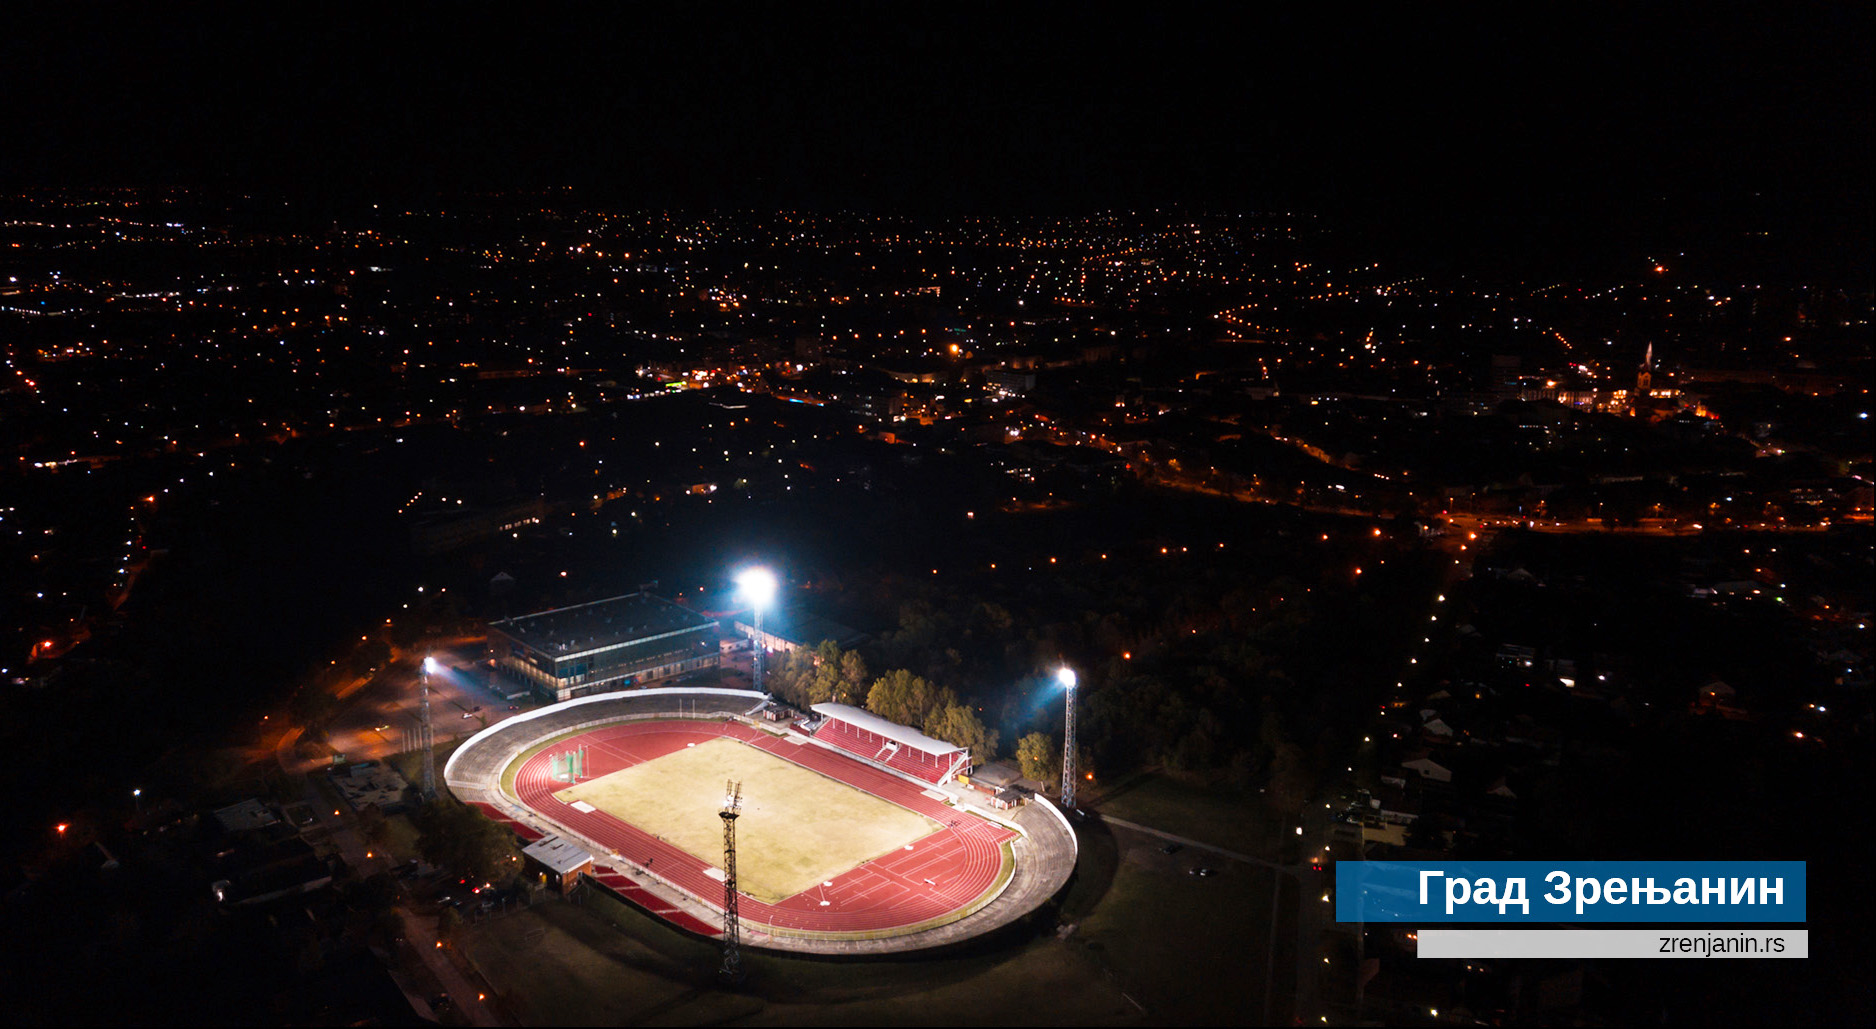 Ispisana stranica sportske istorije grada - zasijali reflektori na Gradskom stadionu